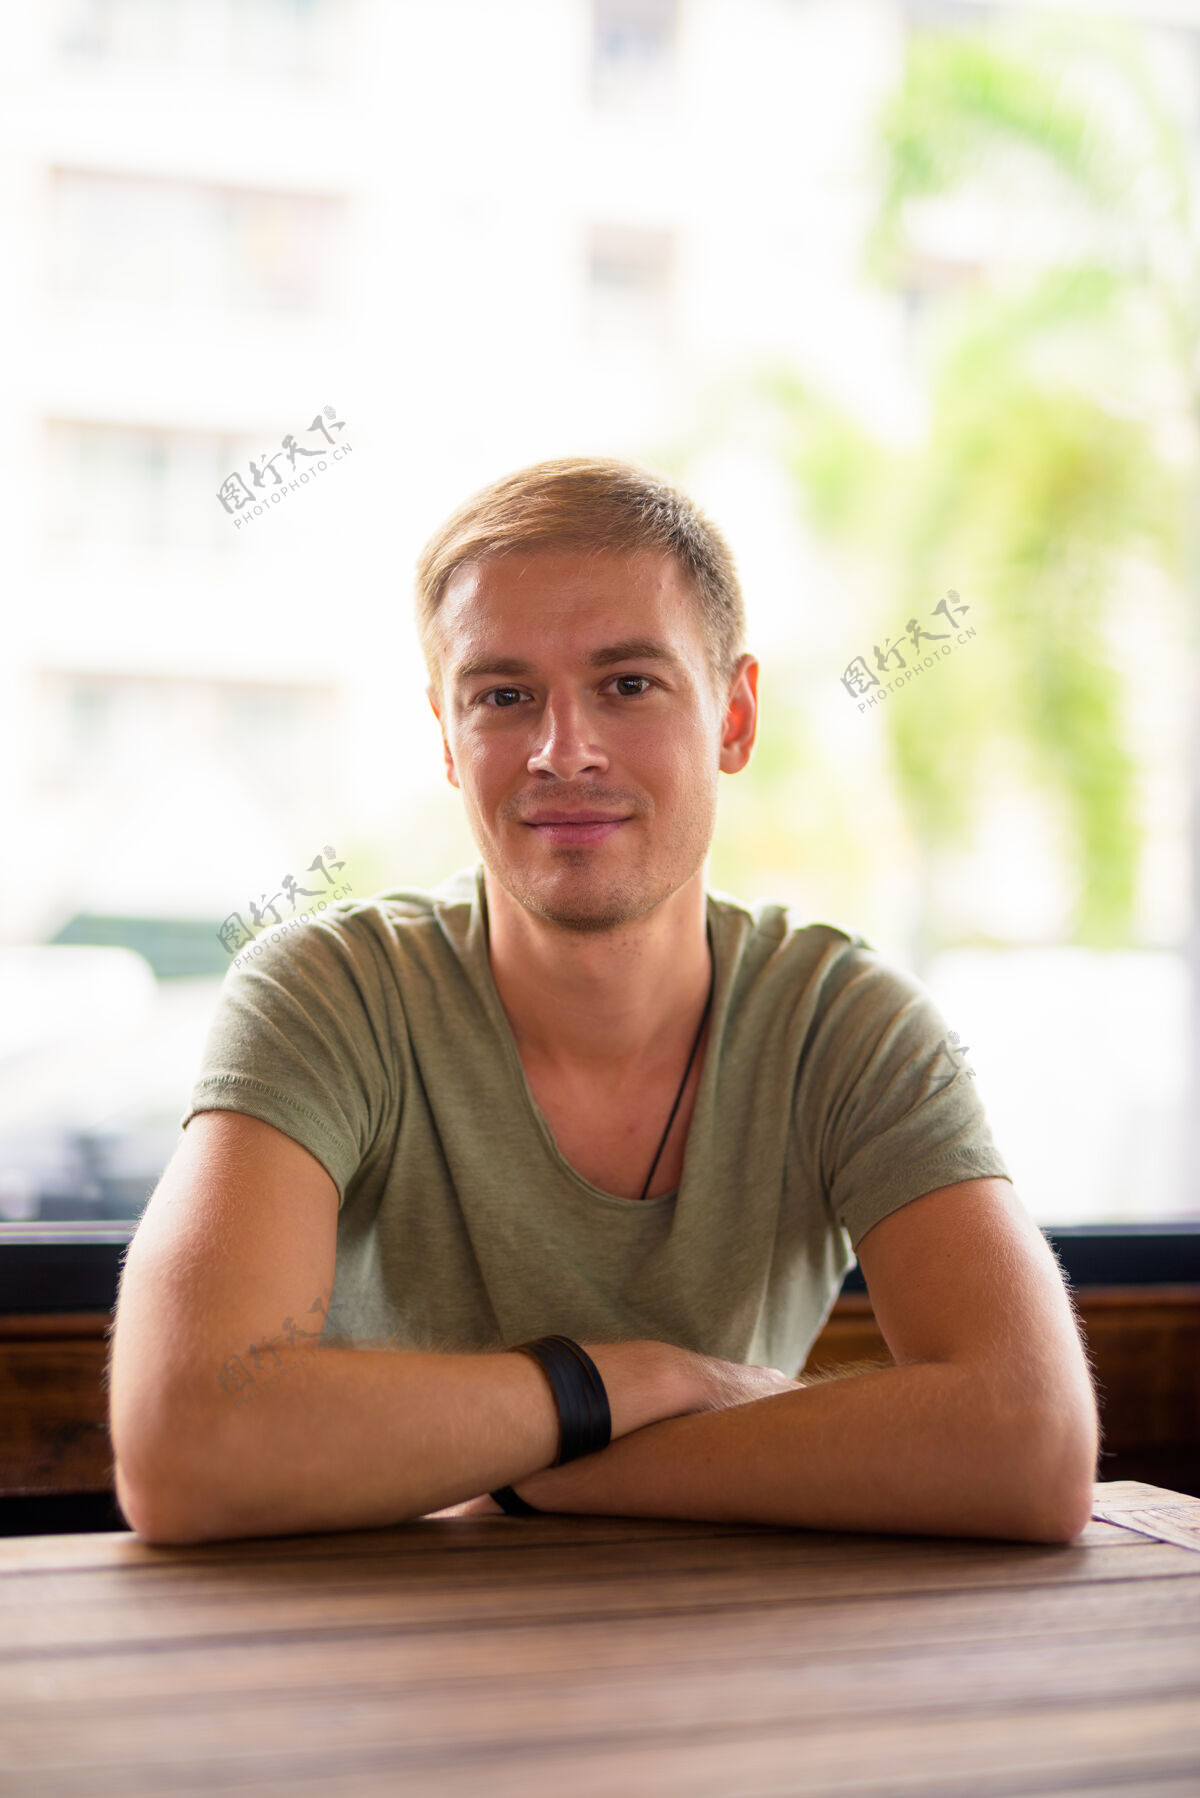 衬衫帅哥在咖啡店放松的写真自信军队伪装